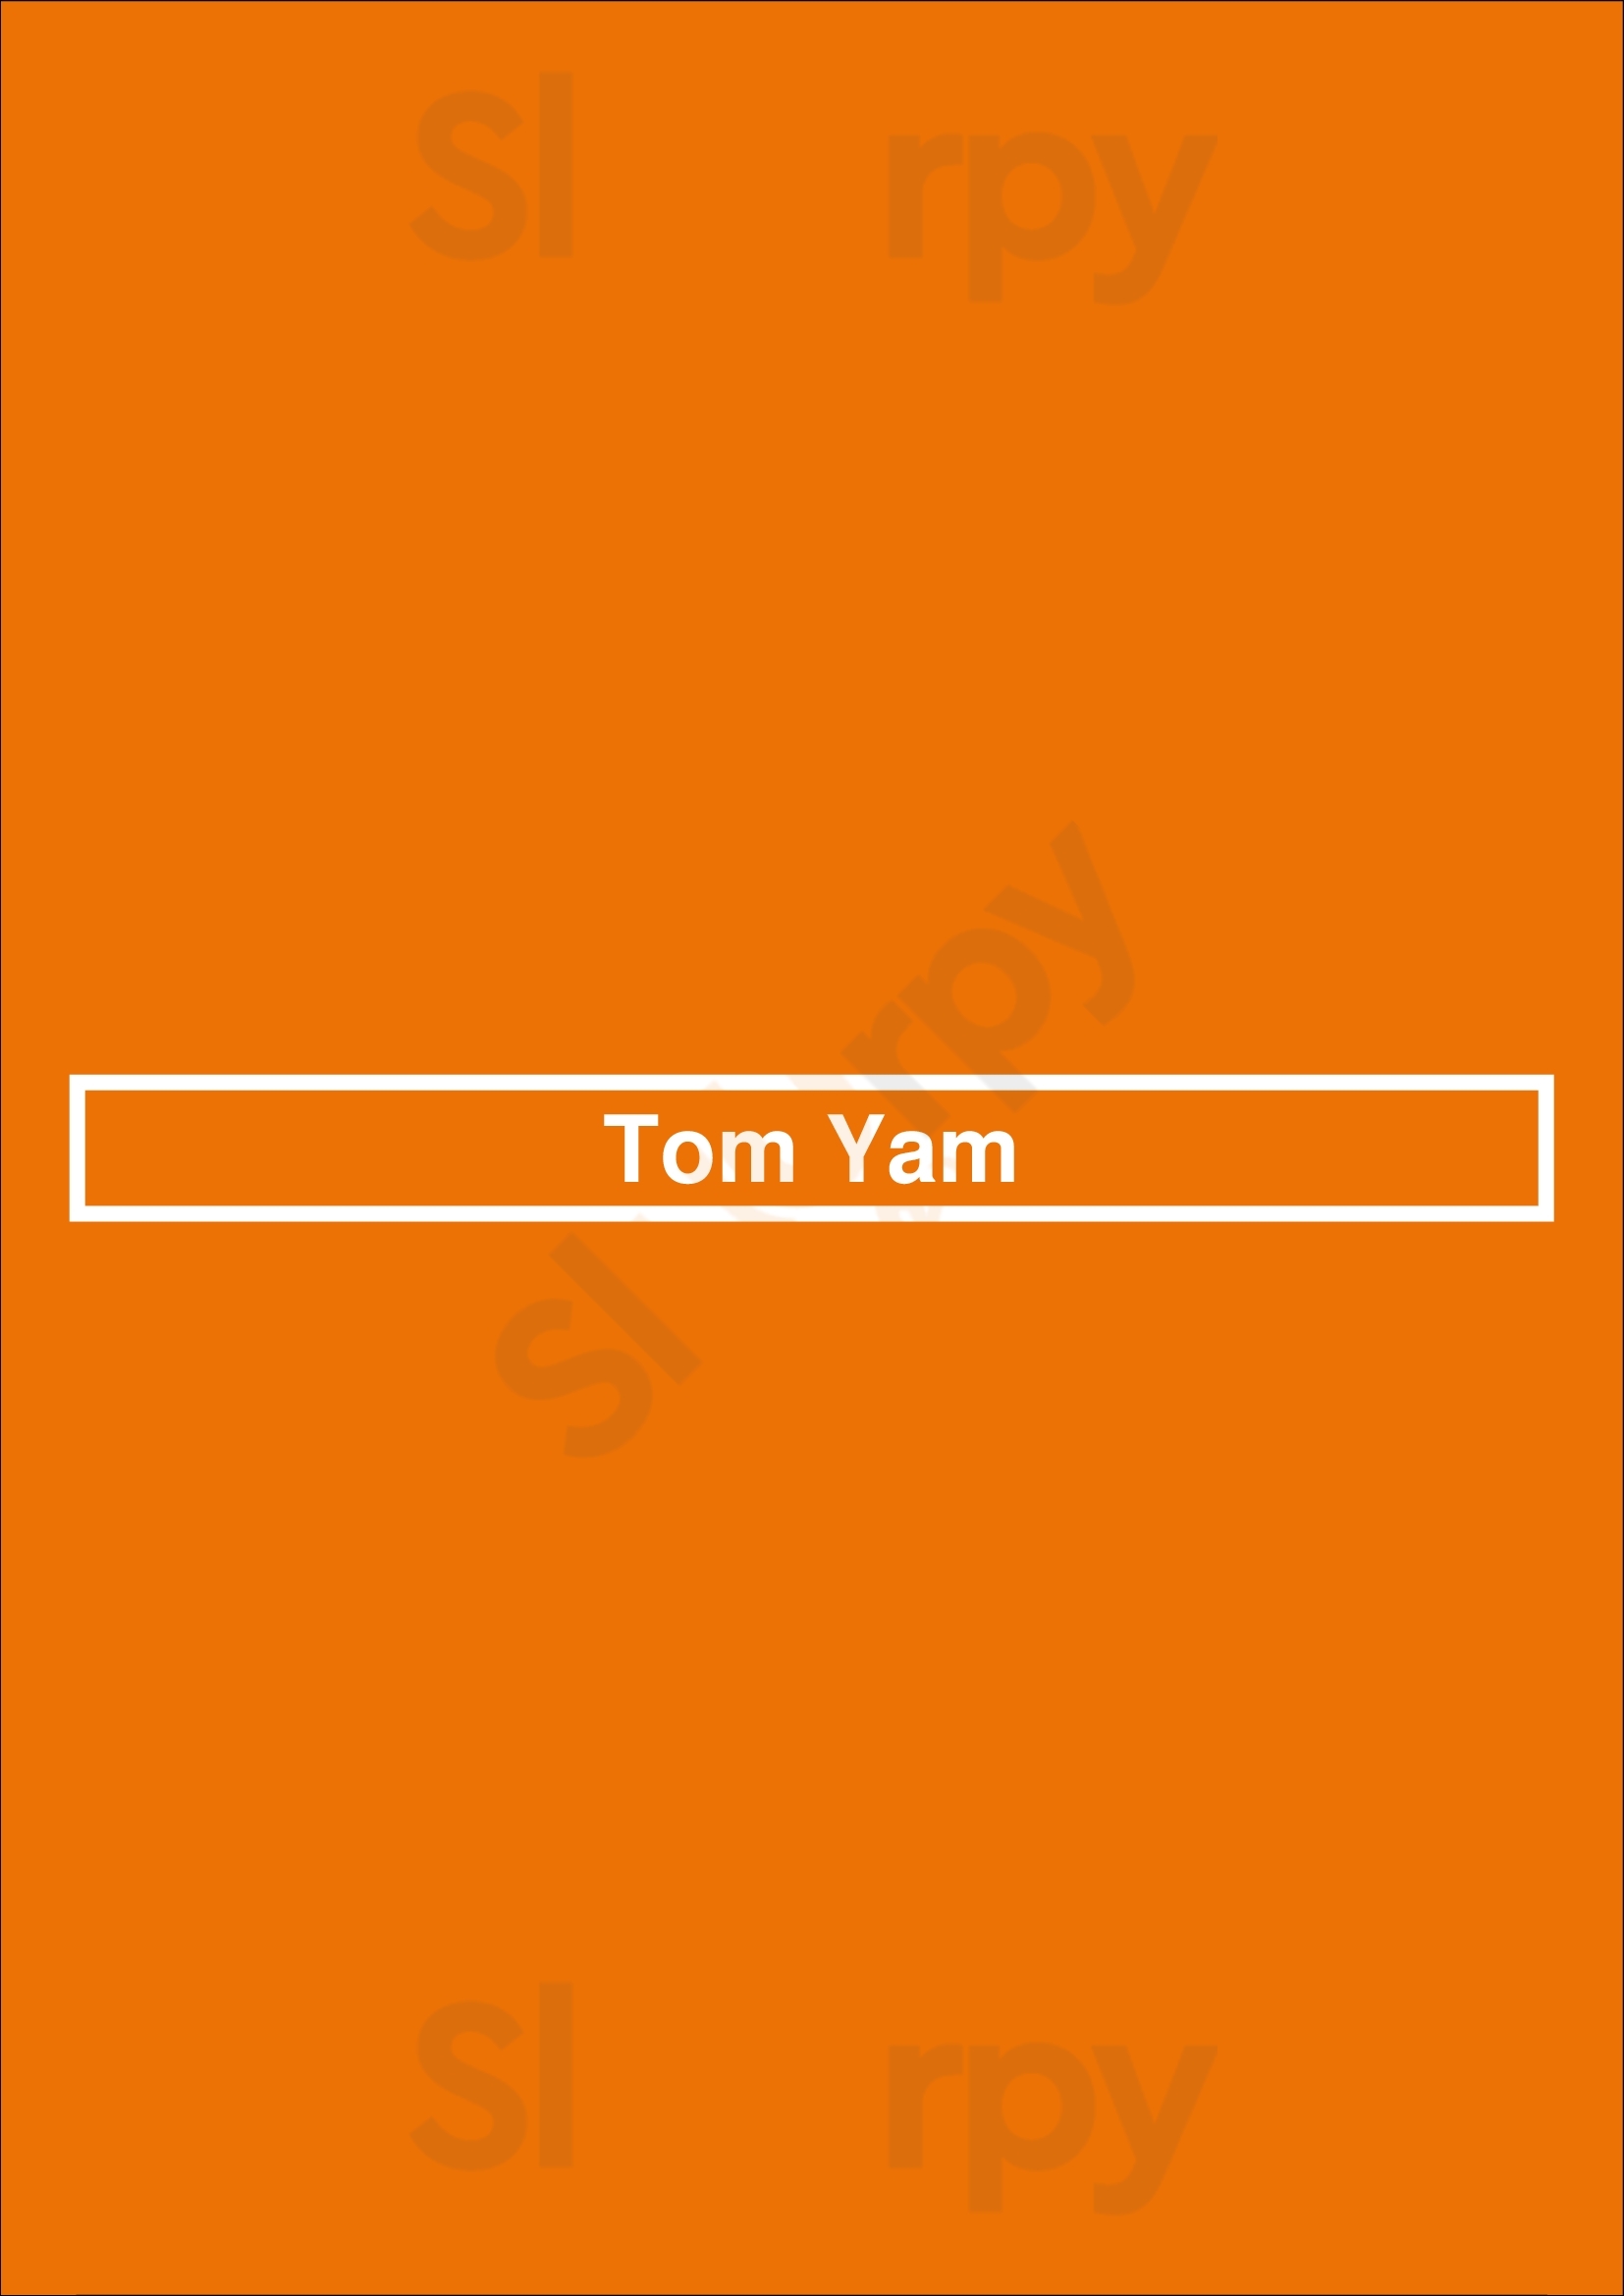 Tom Yam Amsterdam Menu - 1